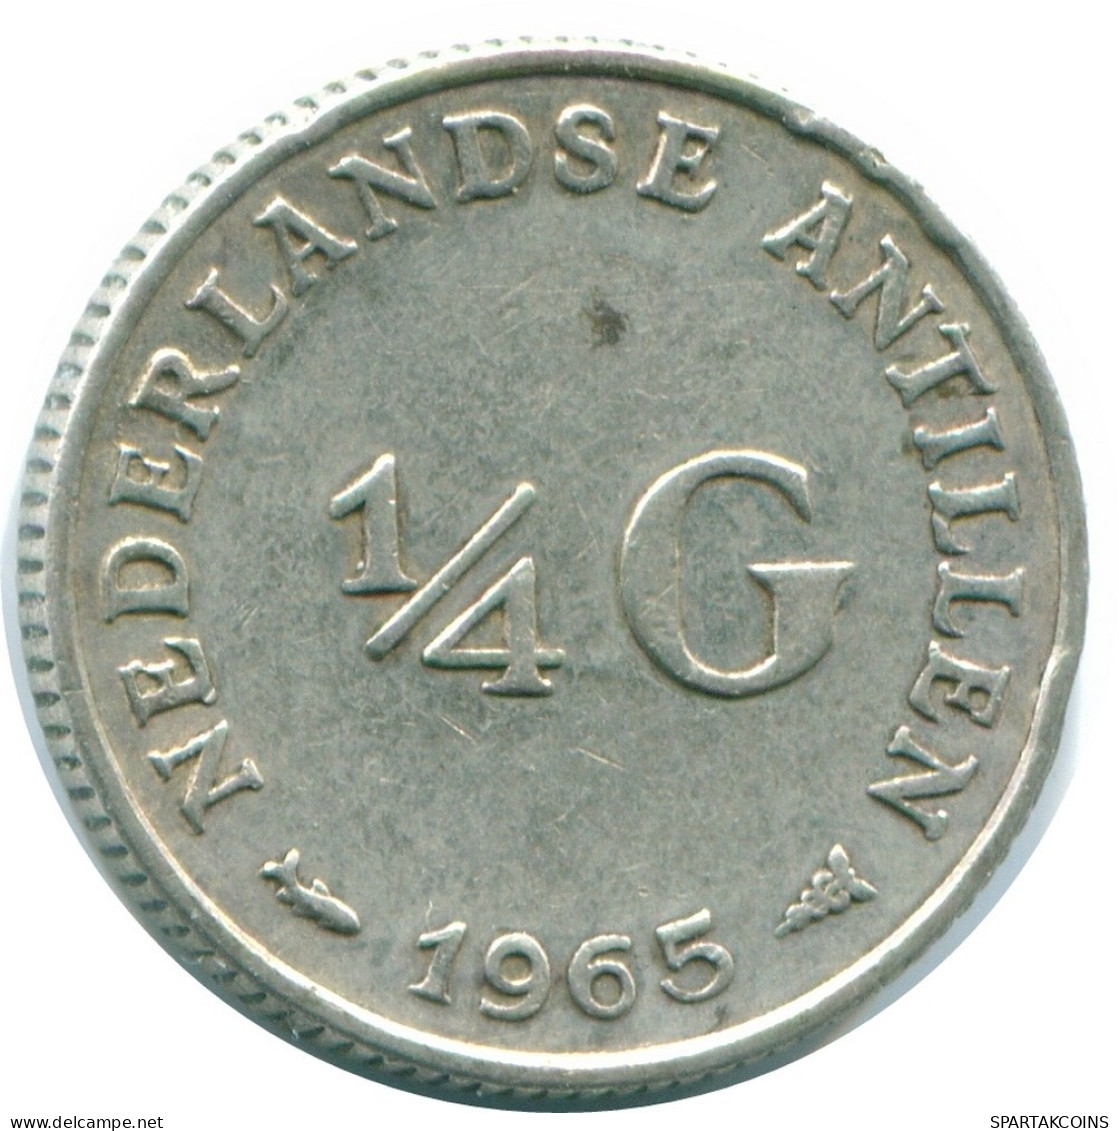 1/4 GULDEN 1965 NIEDERLÄNDISCHE ANTILLEN SILBER Koloniale Münze #NL11293.4.D.A - Niederländische Antillen